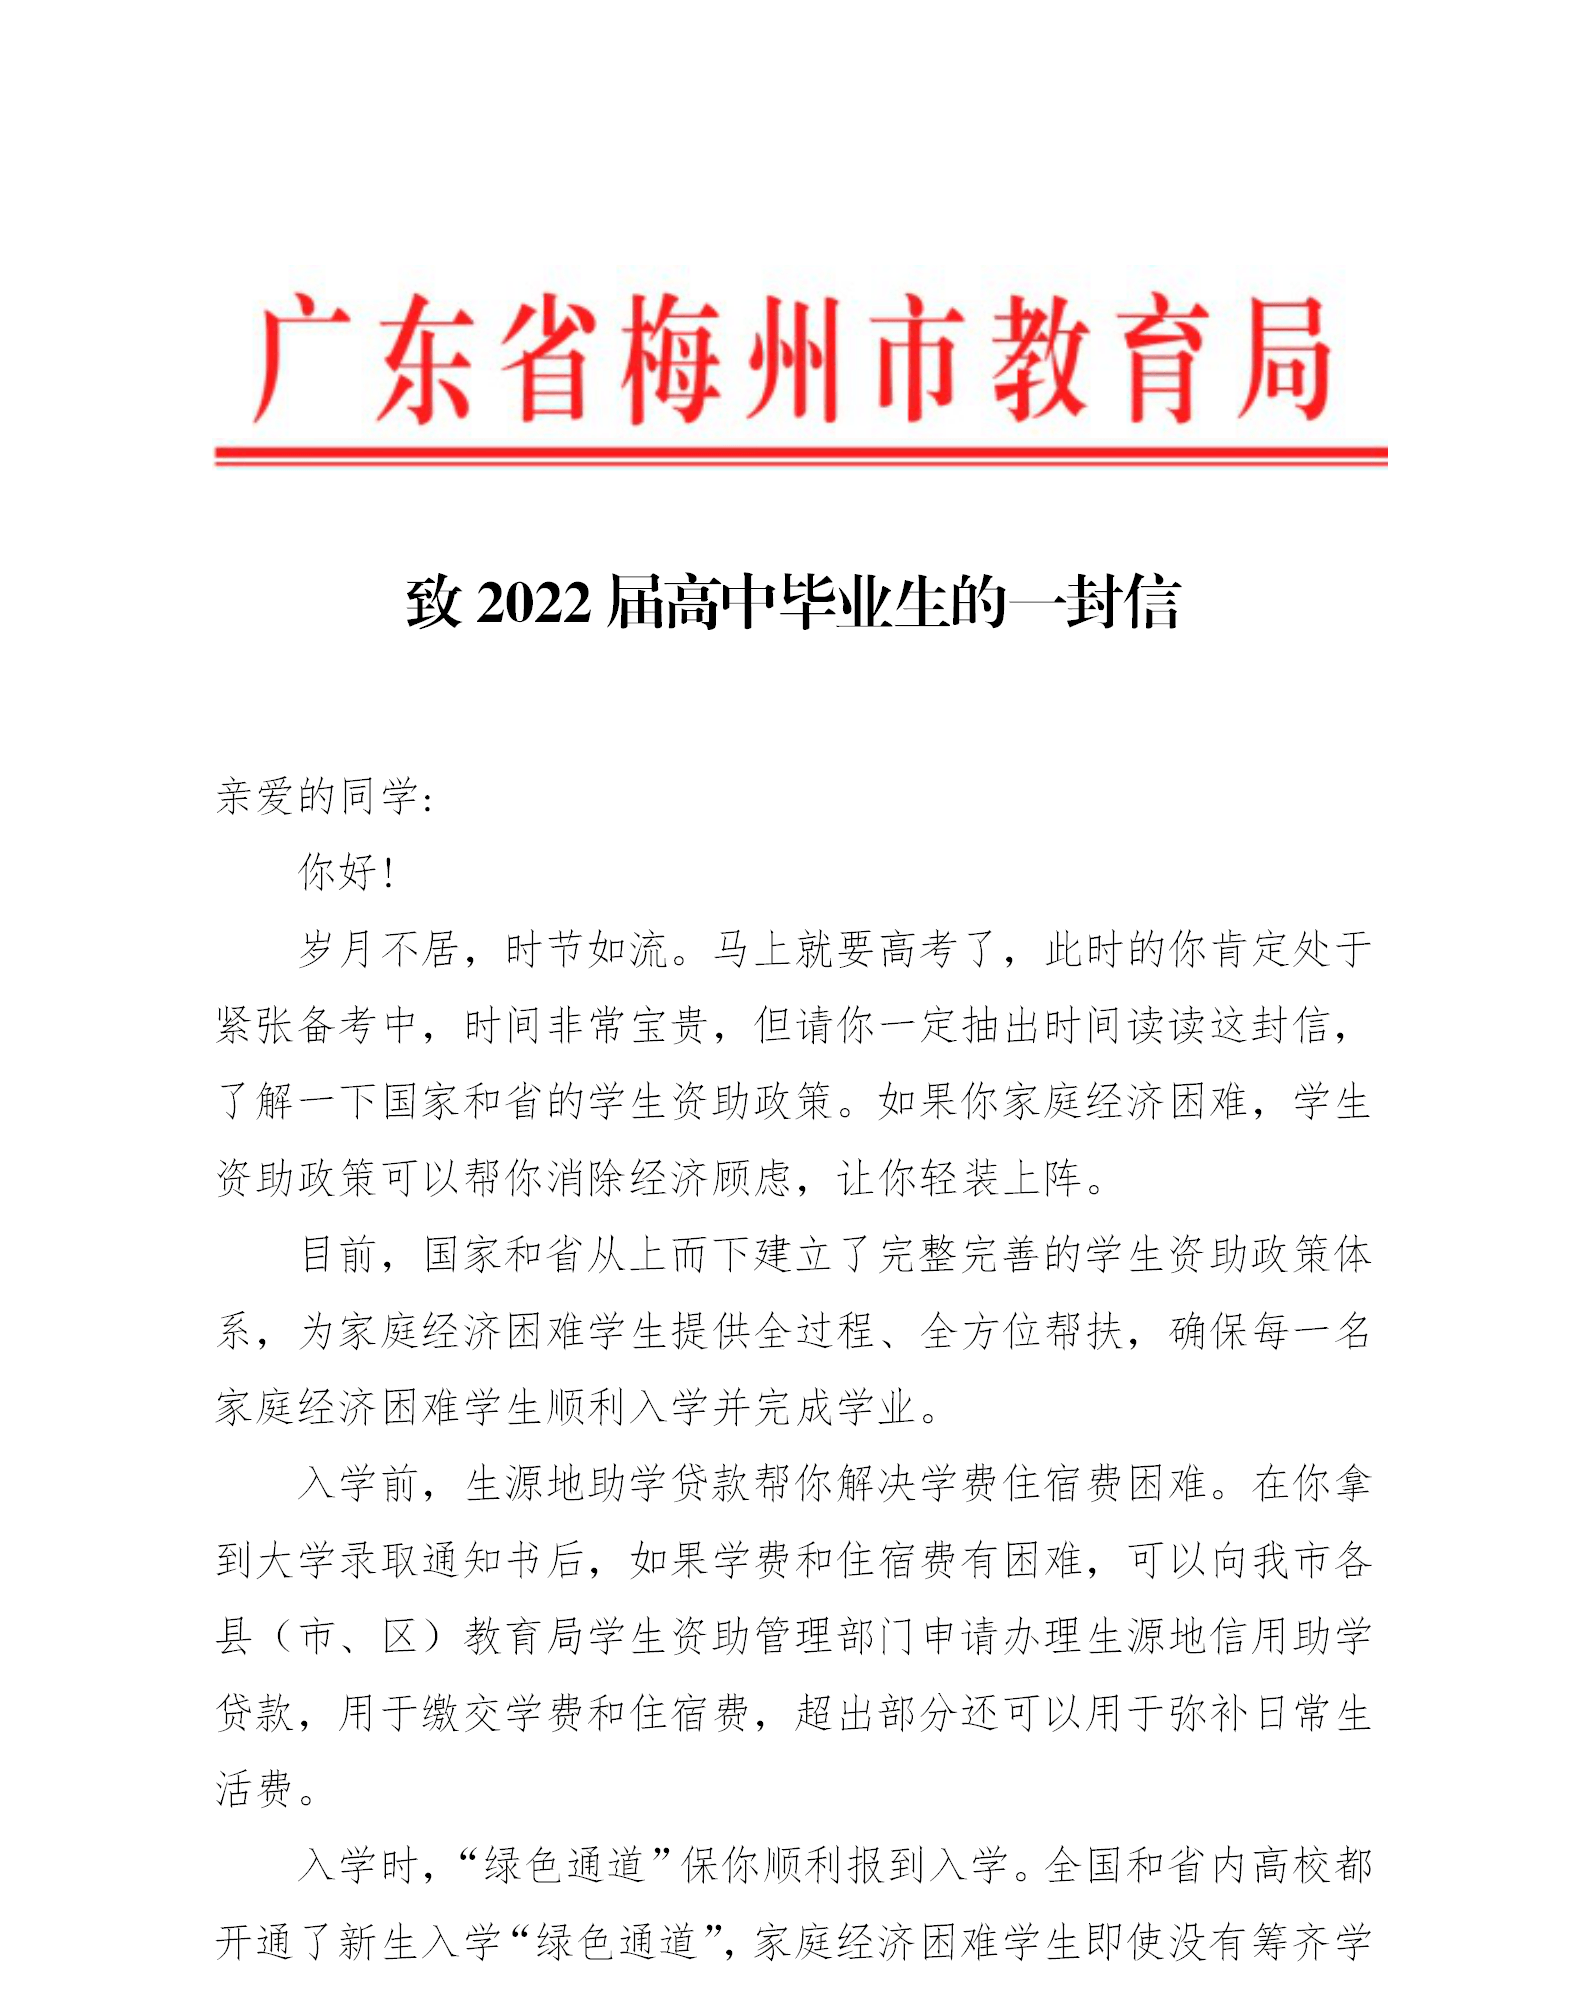 致2022届高中毕业生的一封信(套头)_01.png